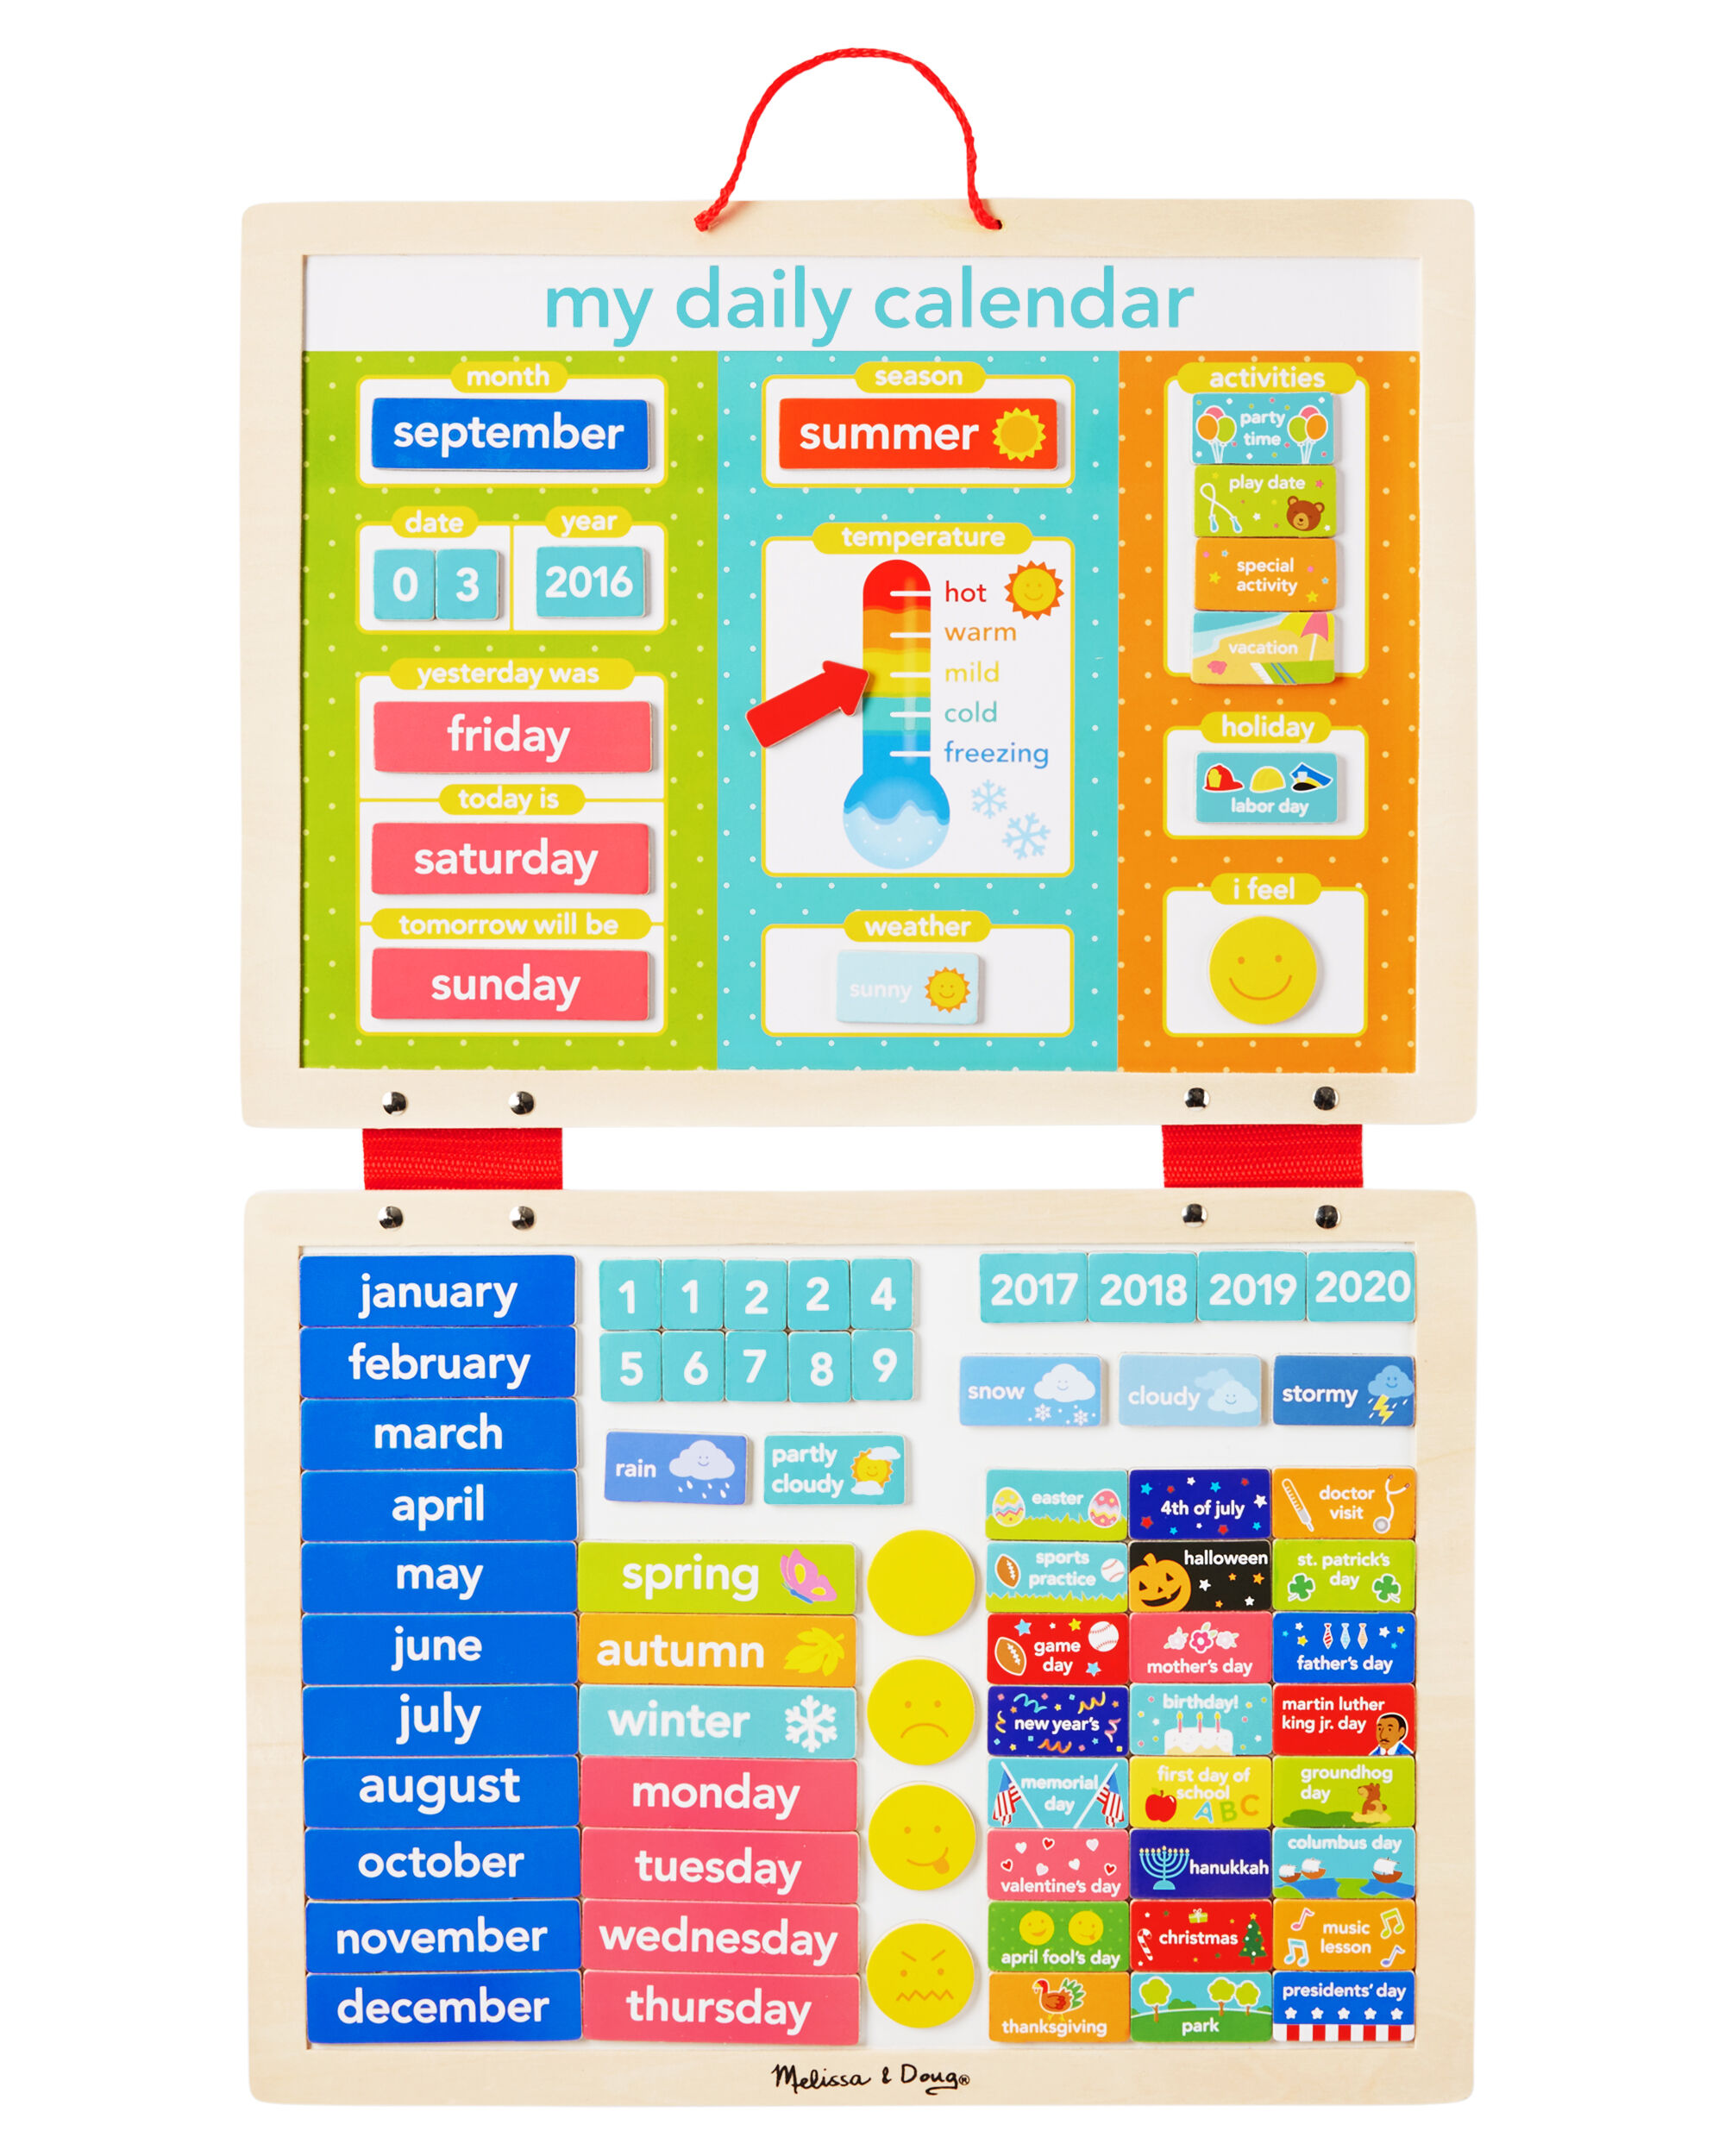 melissa and doug my daily calendar